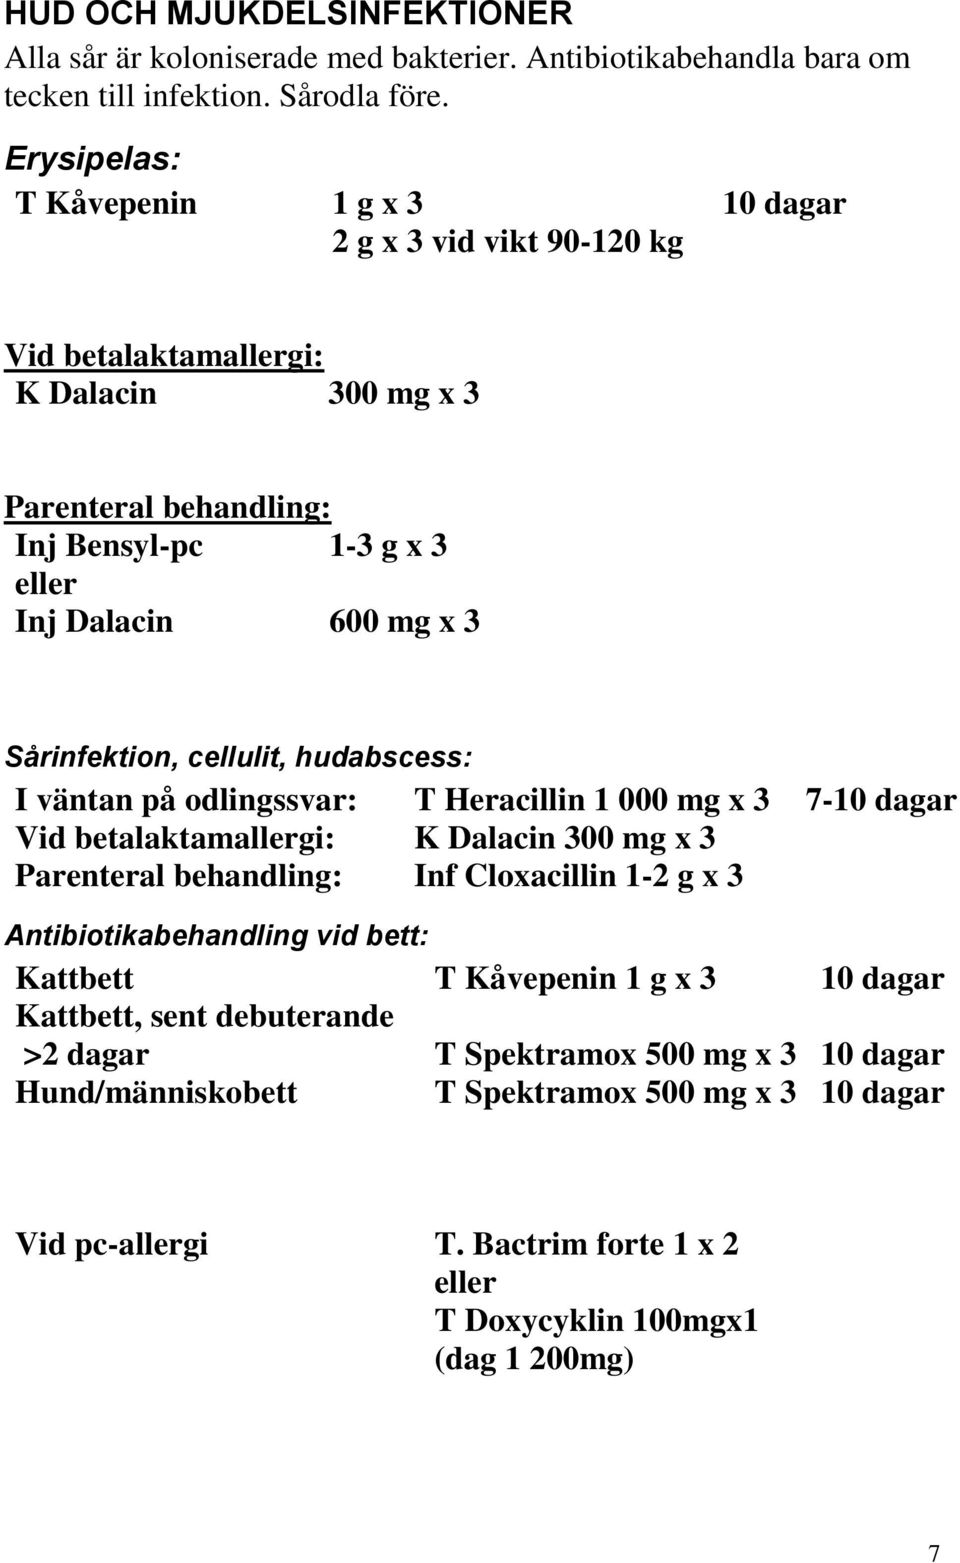 Sårinfektion, cellulit, hudabscess: I väntan på odlingssvar: T Heracillin 1 000 mg x 3 7-10 dagar Vid betalaktamallergi: K Dalacin 300 mg x 3 Parenteral behandling: Inf Cloxacillin 1-2 g x 3